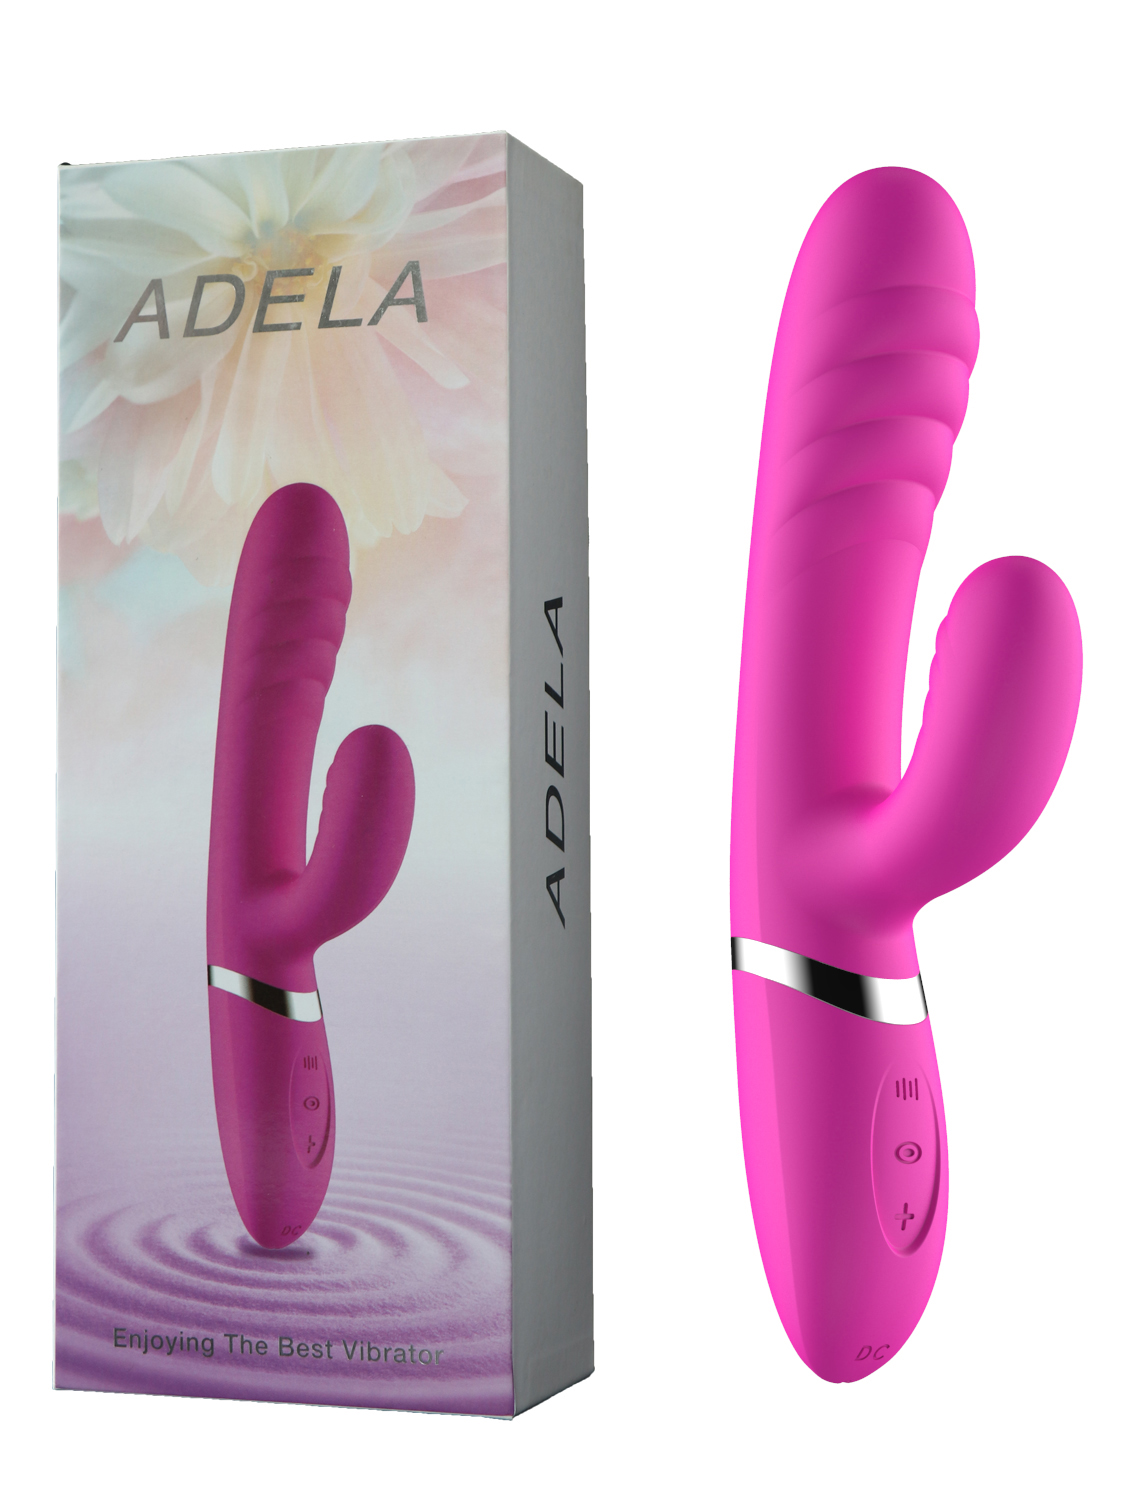 100% Silikon, USB Şarj Edilebilir, 21 cm Boyutunda, Klitorik Uyarıcı Özellikli Adela Vibratör